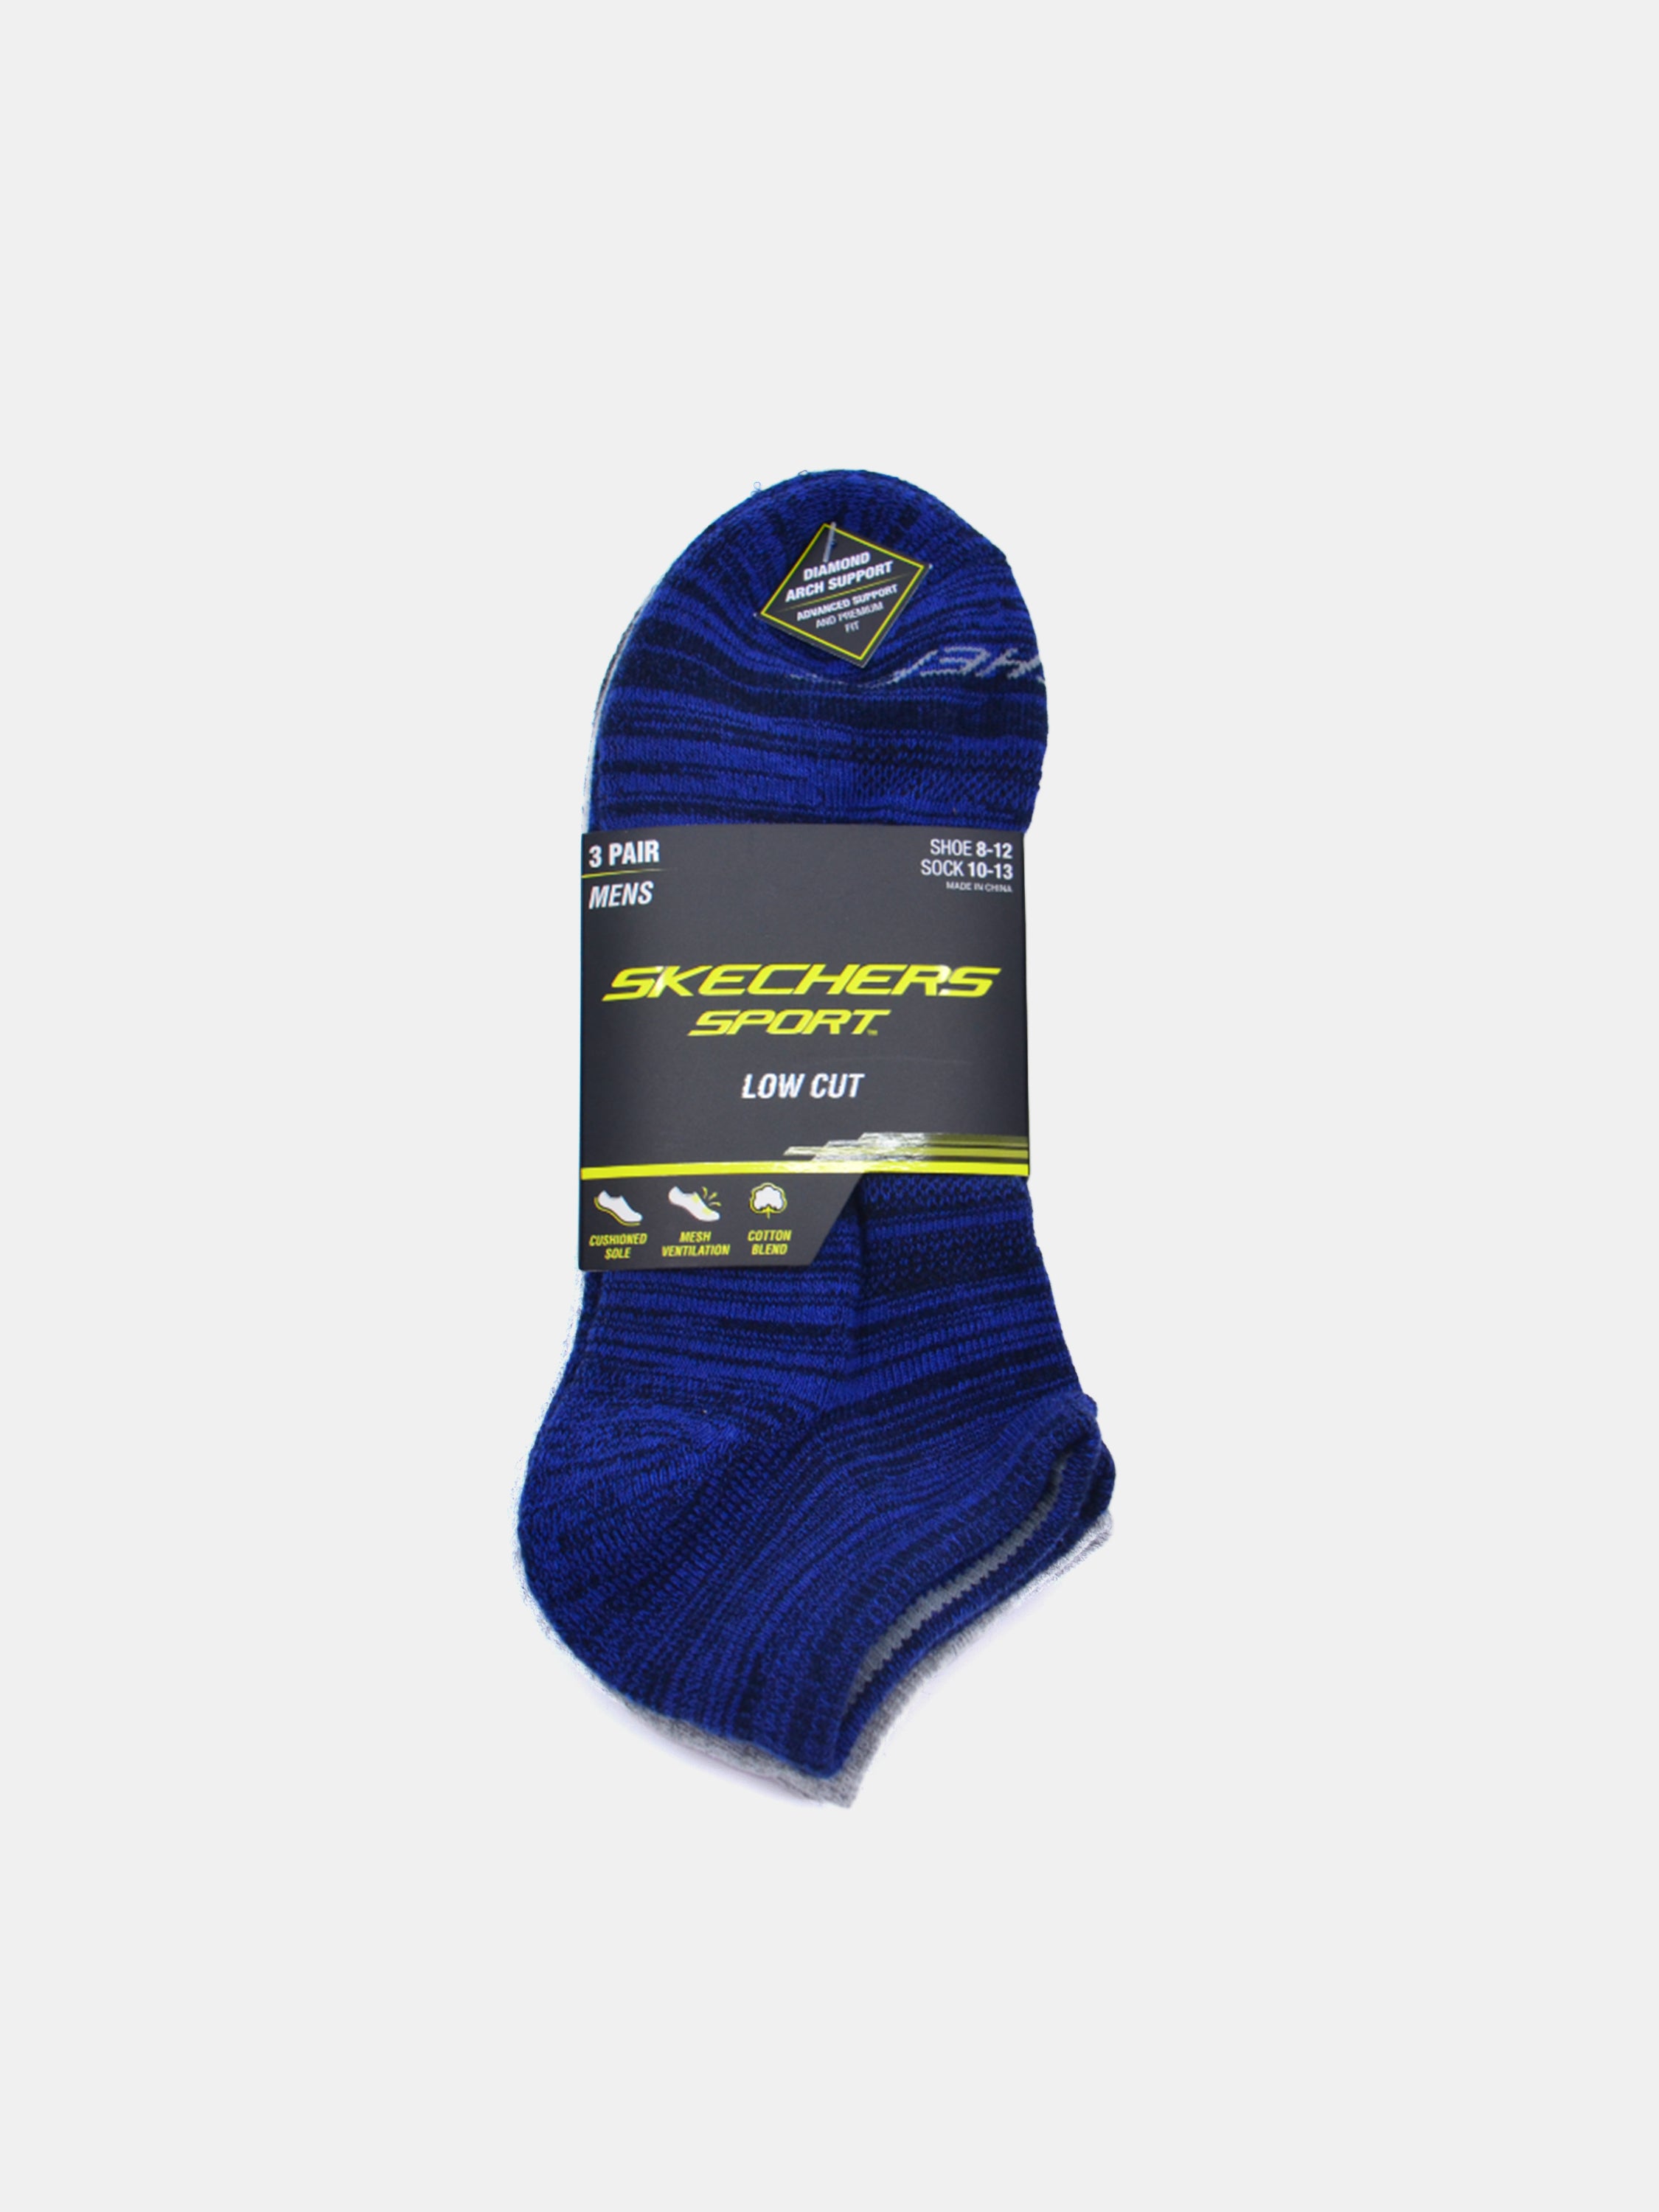 Skechers Men's Low Cut Sport Socks (3 Pack)